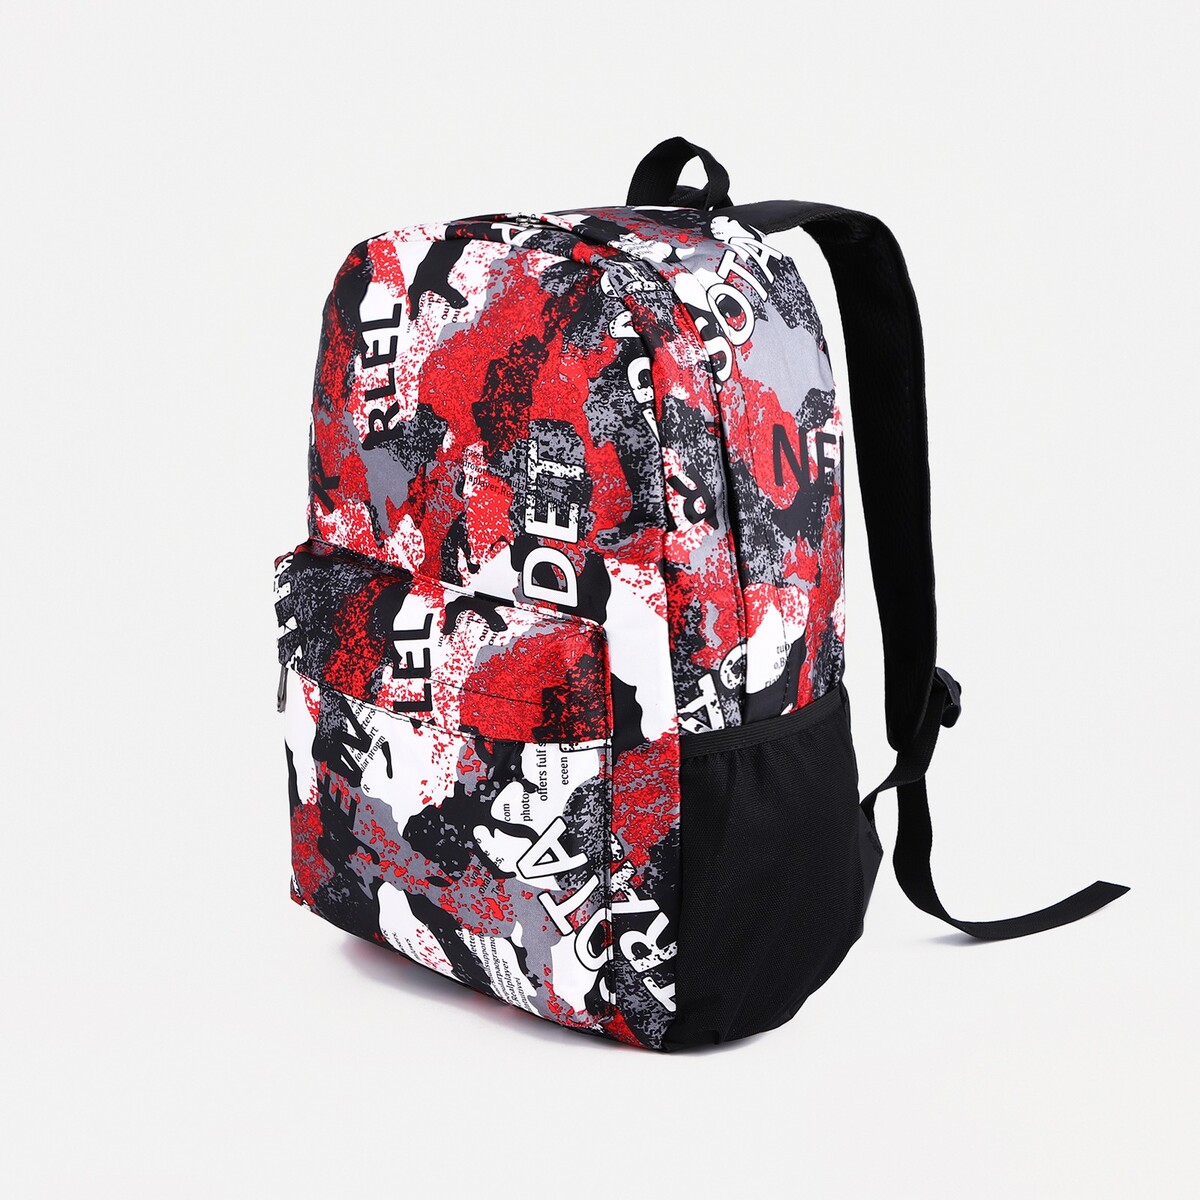 Рюкзак молодежный из текстиля, 3 кармана, цвет серый/красный рюкзак moleskine metro 15 красный